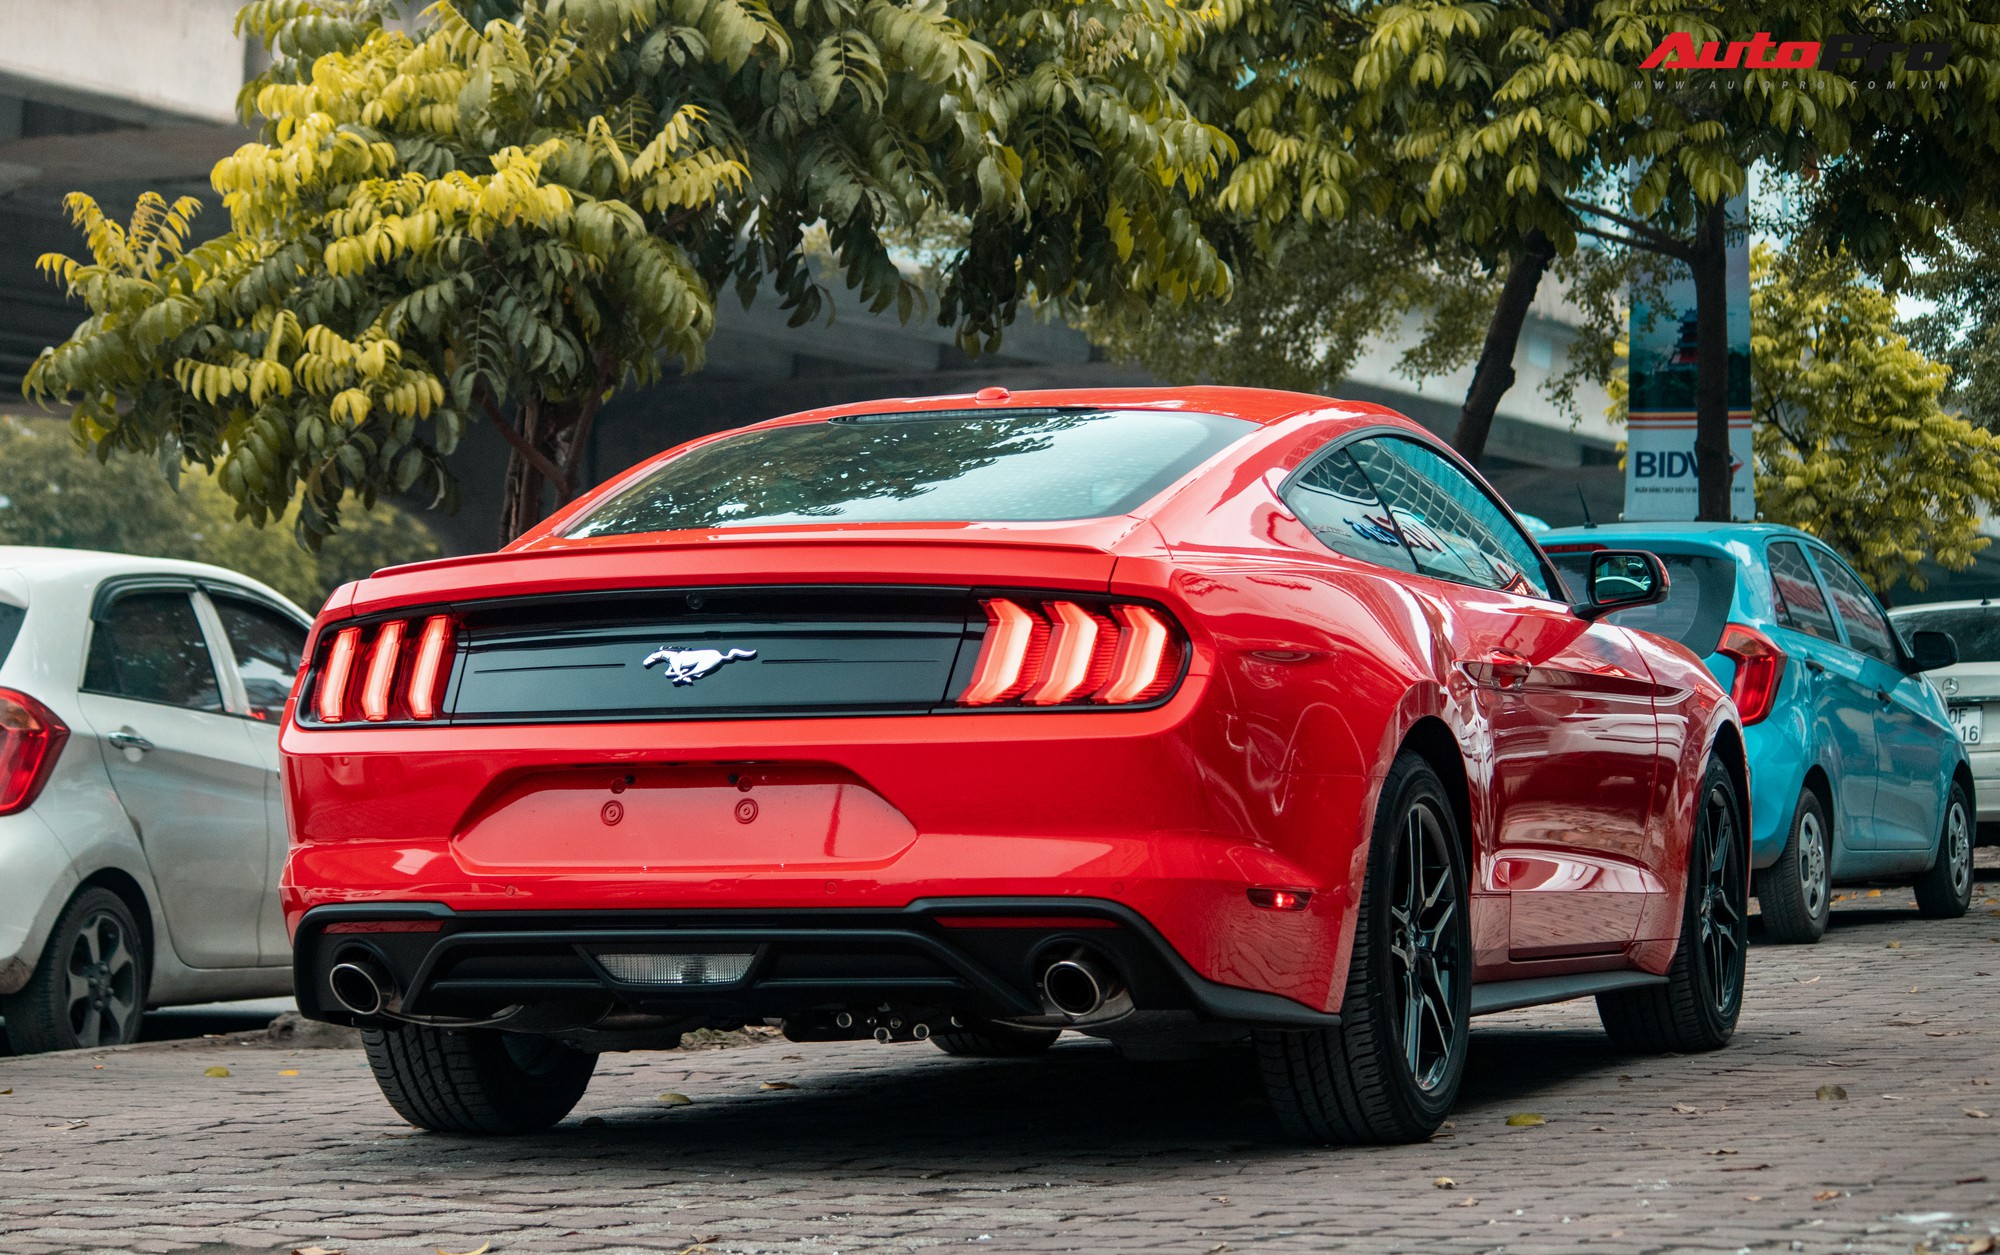 Ford Mustang thêm phiên bản ngang tầm siêu xe số lượng giới hạn giá bán  bí ẩn  CafeAutoVn